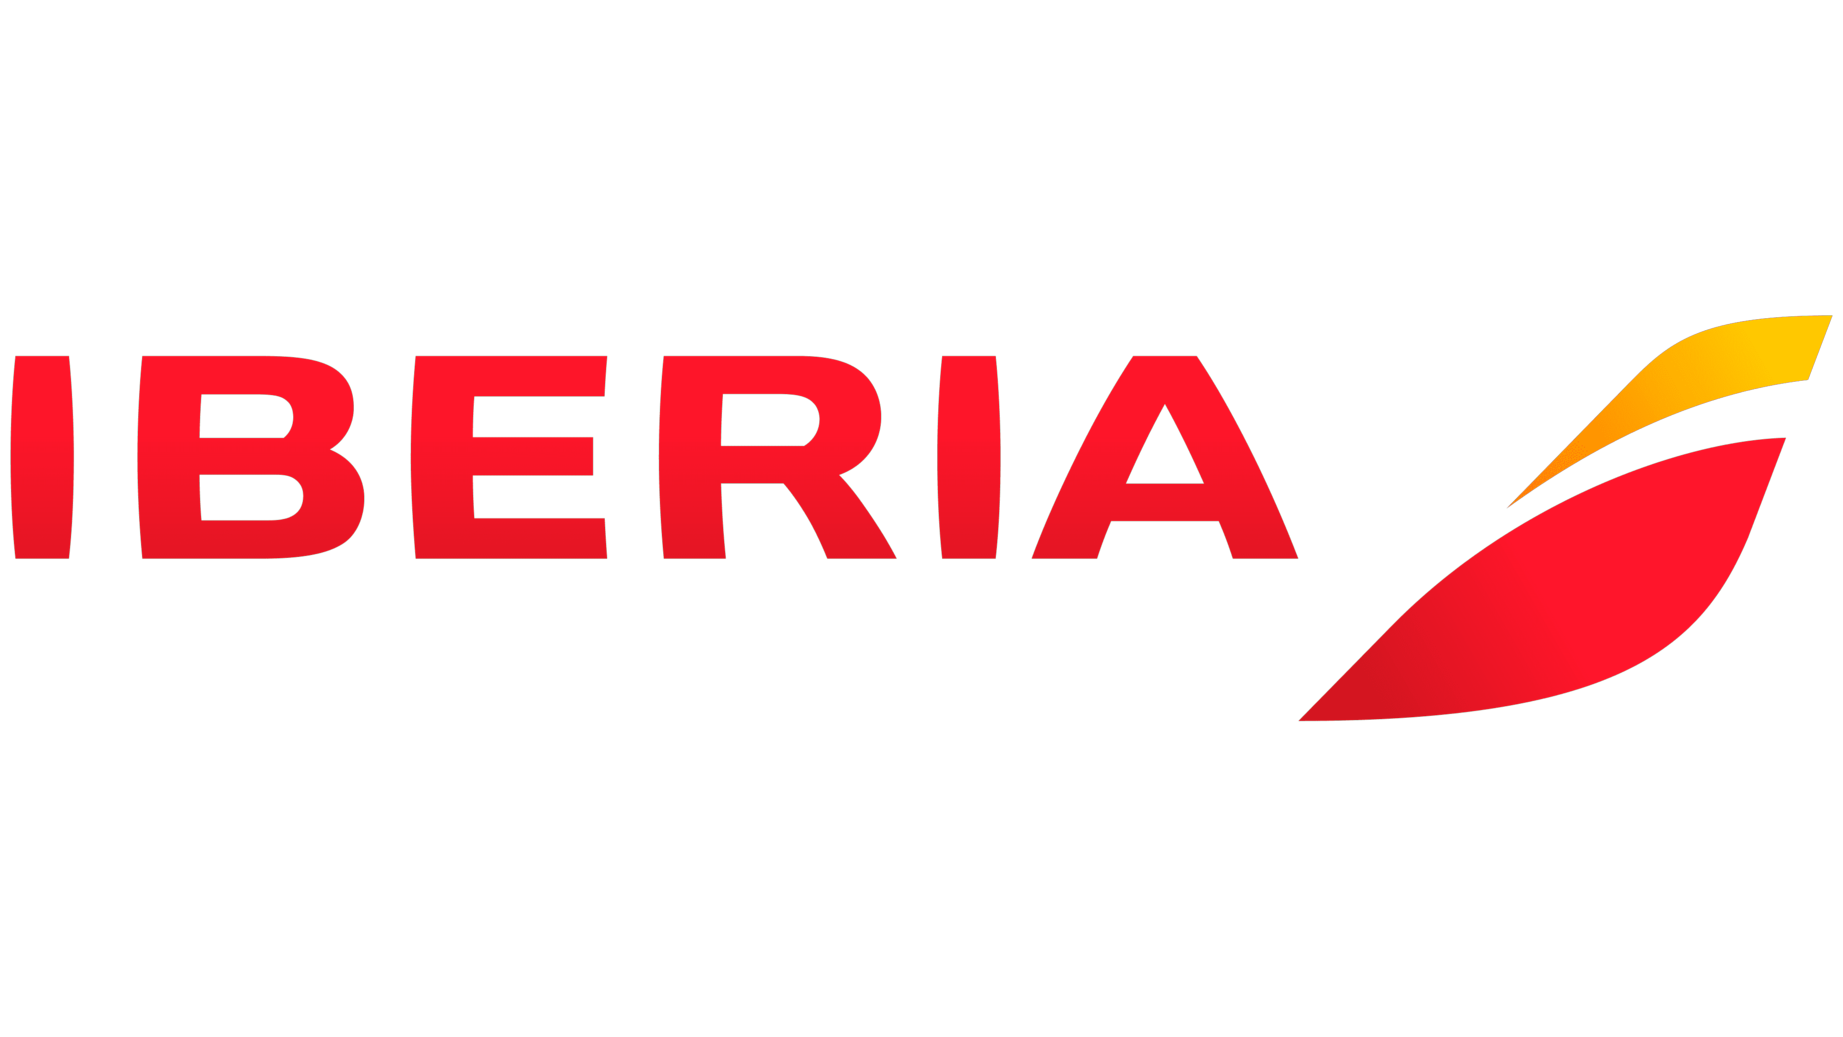 Iberia sign